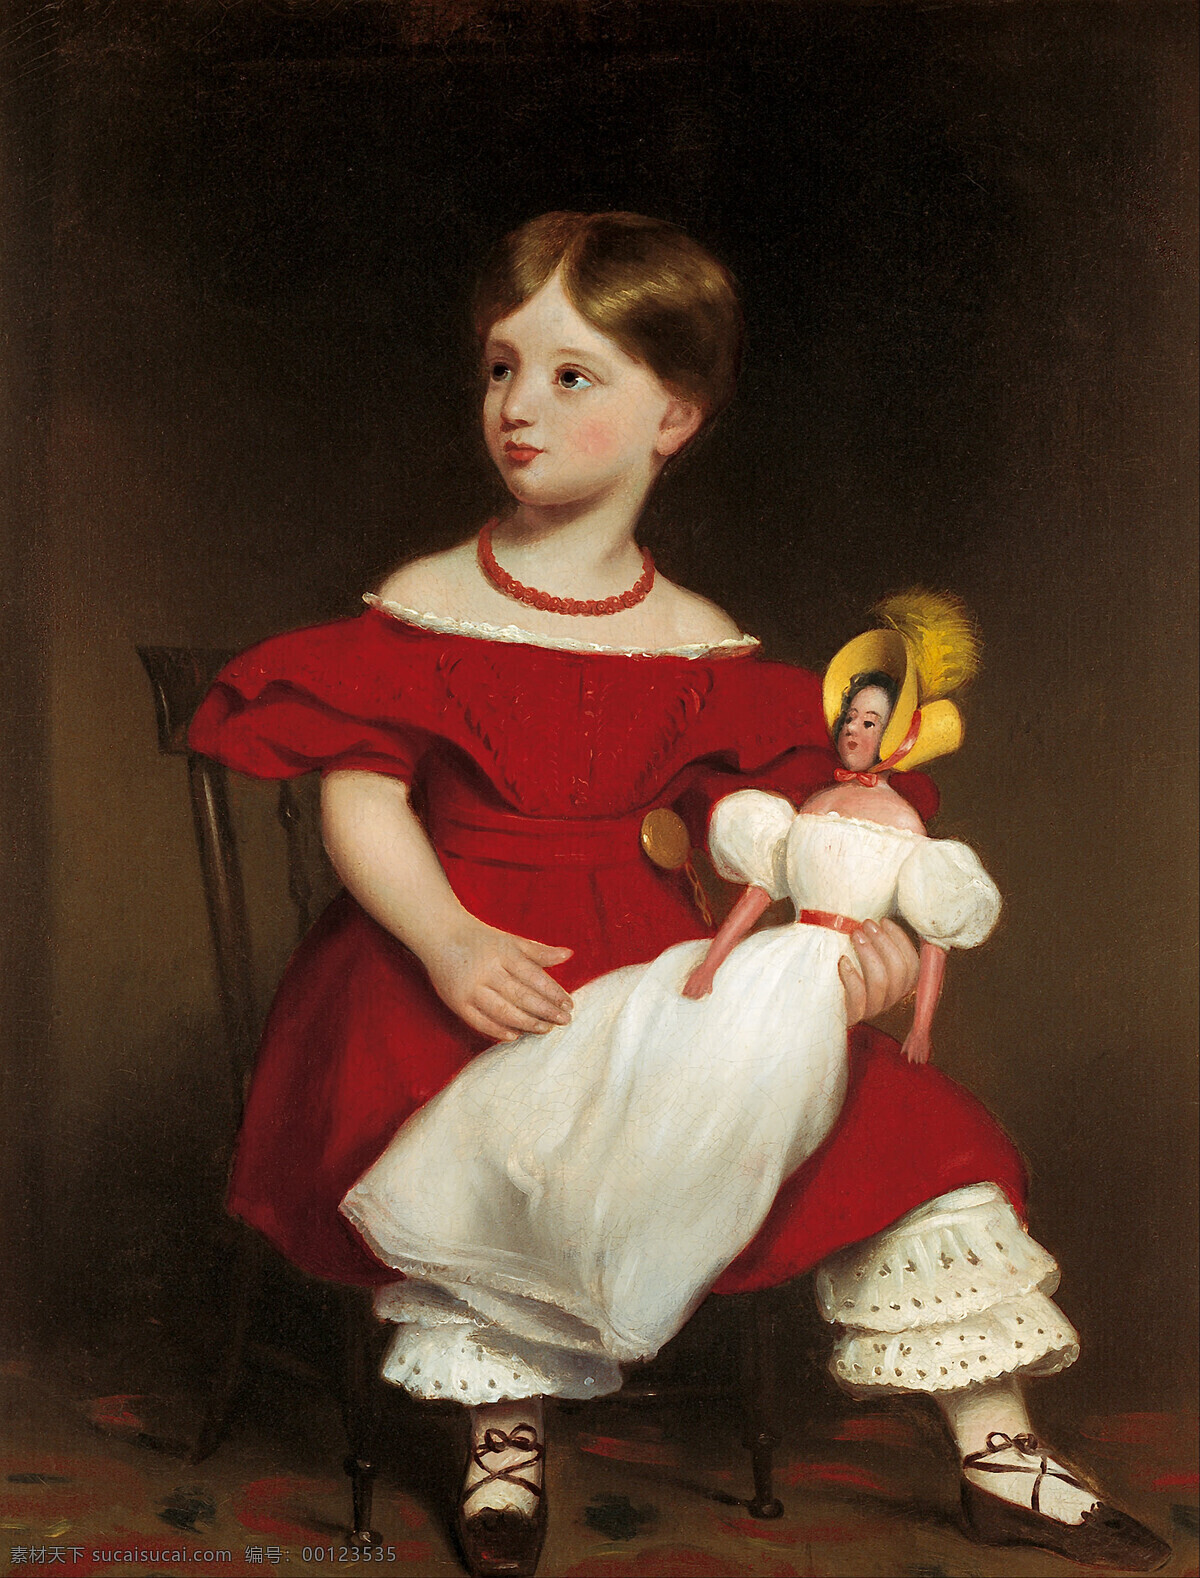 绘画书法 文化艺术 幸福童年 油画 伊莱莎兰霍恩 托马斯 博克 作品 小姑娘 与洋娃娃 贵族小姐 坐像 19世纪油画 家居装饰素材